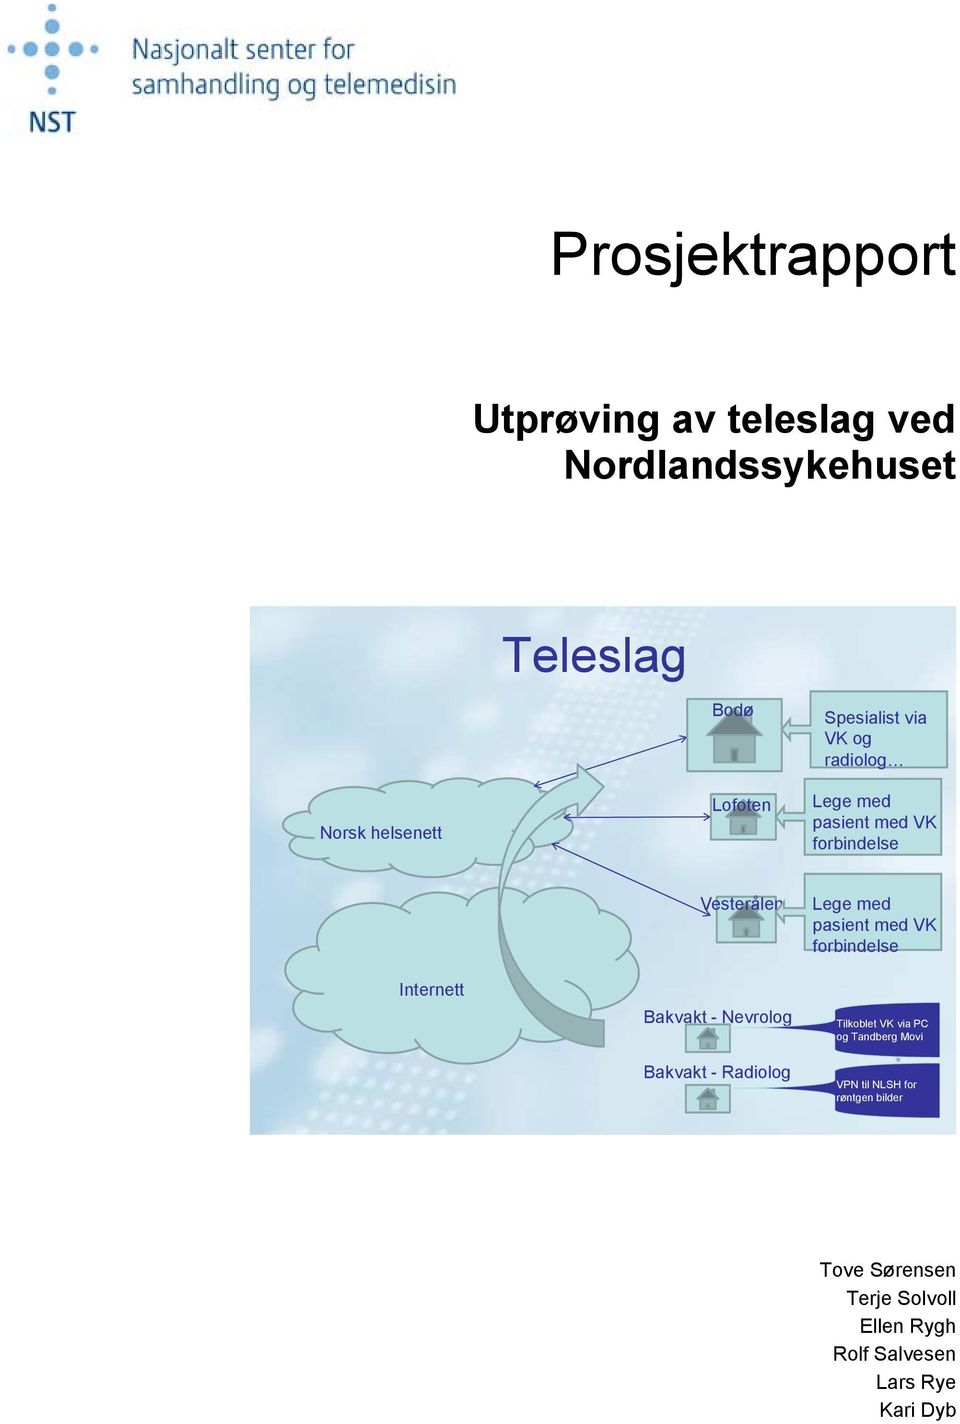 Nevrolog Bakvakt - Radiolog Lege med pasient med VK forbindelse Tilkoblet VK via PC og Tandberg